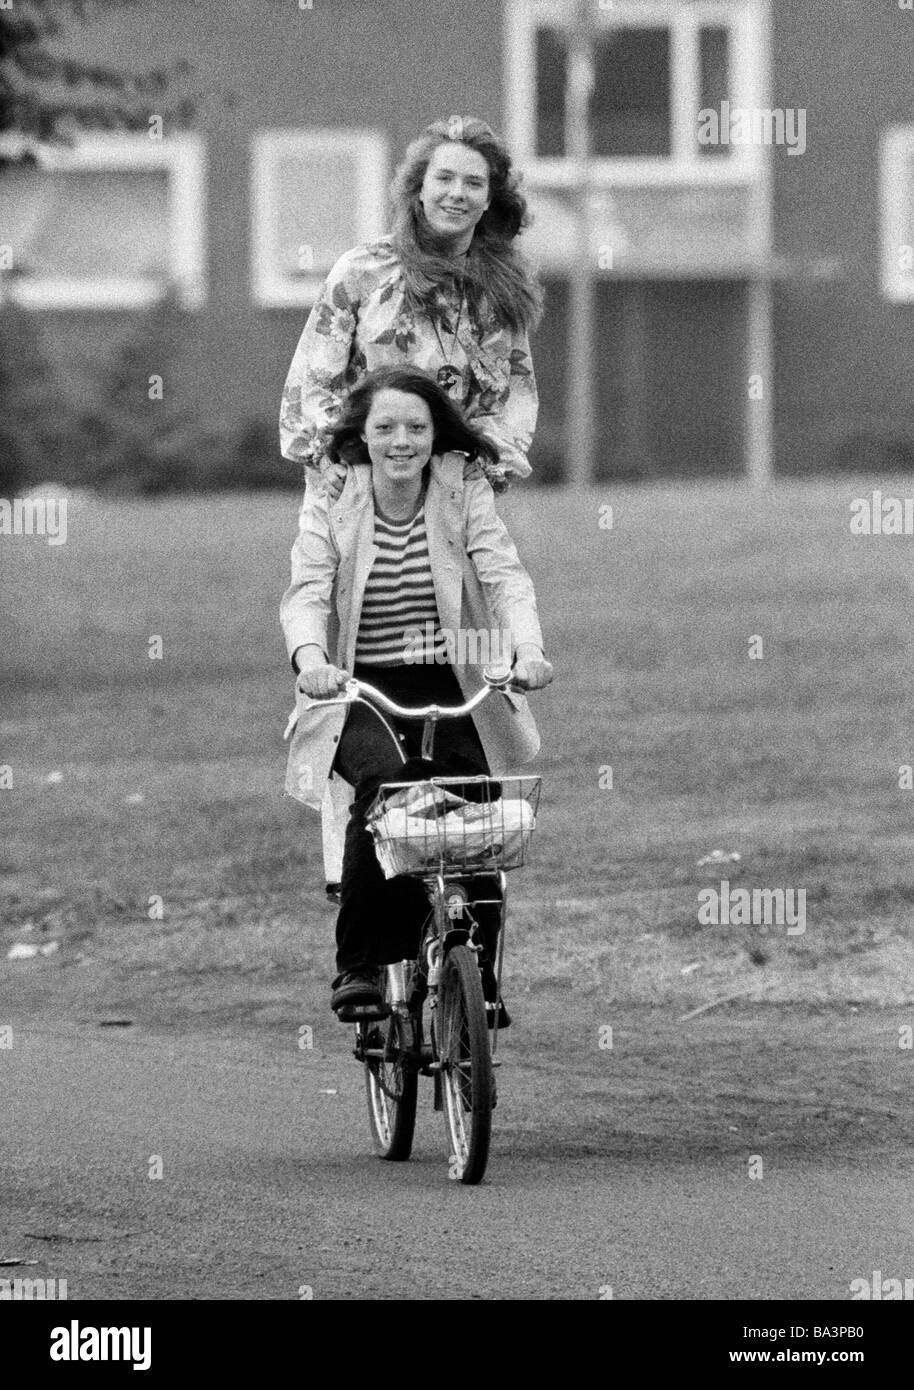 Années 70, photo en noir et blanc, les gens, les deux jeunes filles sur un vélo, une jeune fille se tient sur le pannier rack, humour, fun, âgés de 18 à 22 ans Banque D'Images